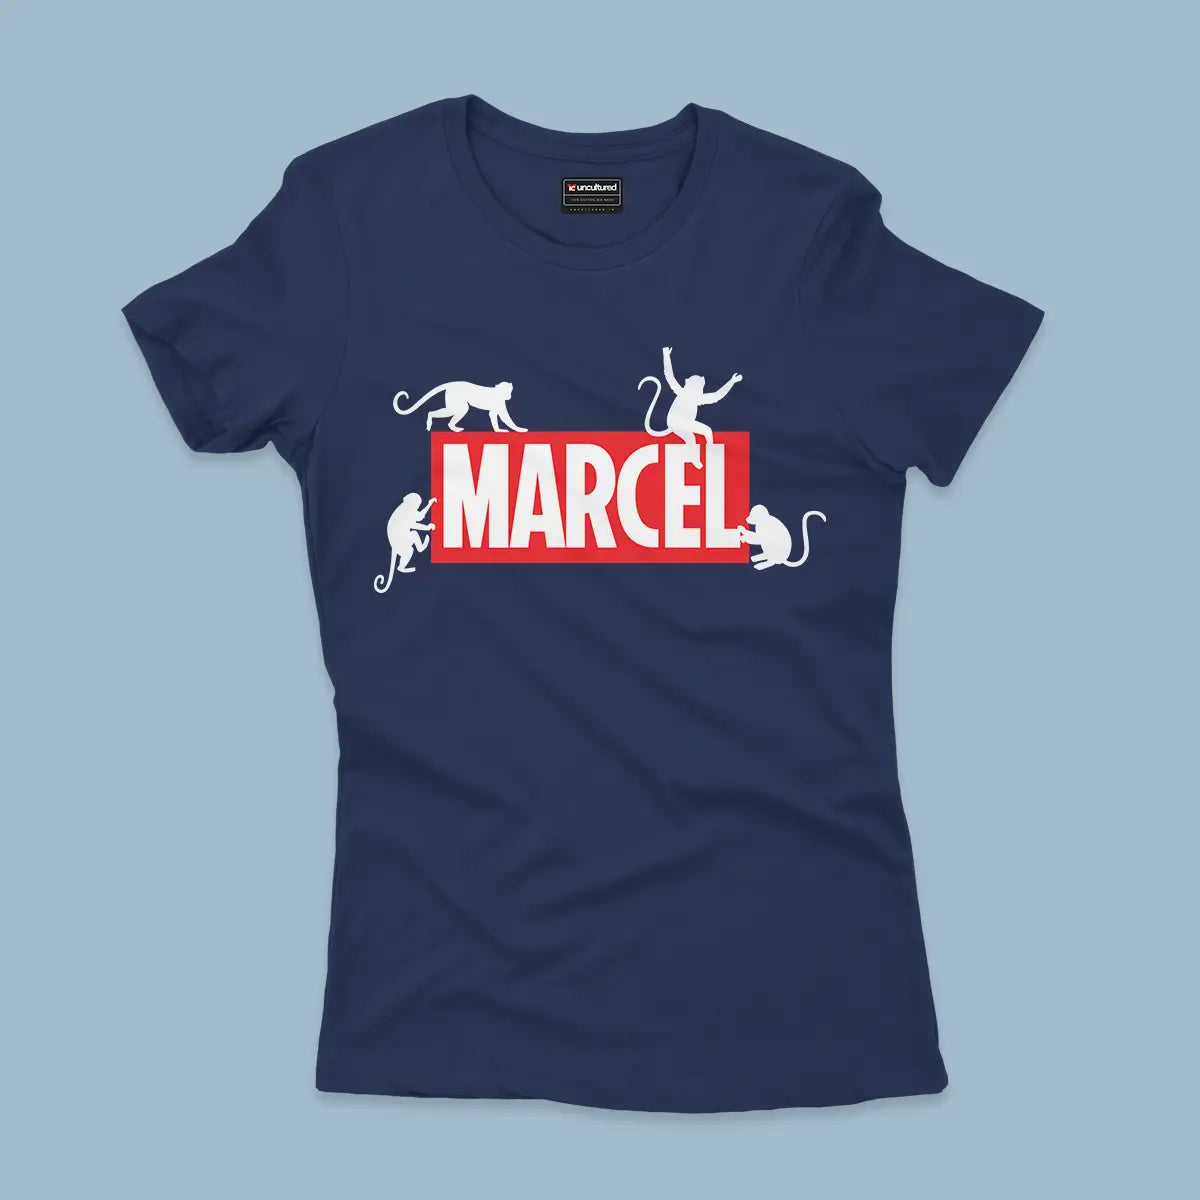 Marcel - Regular - Women